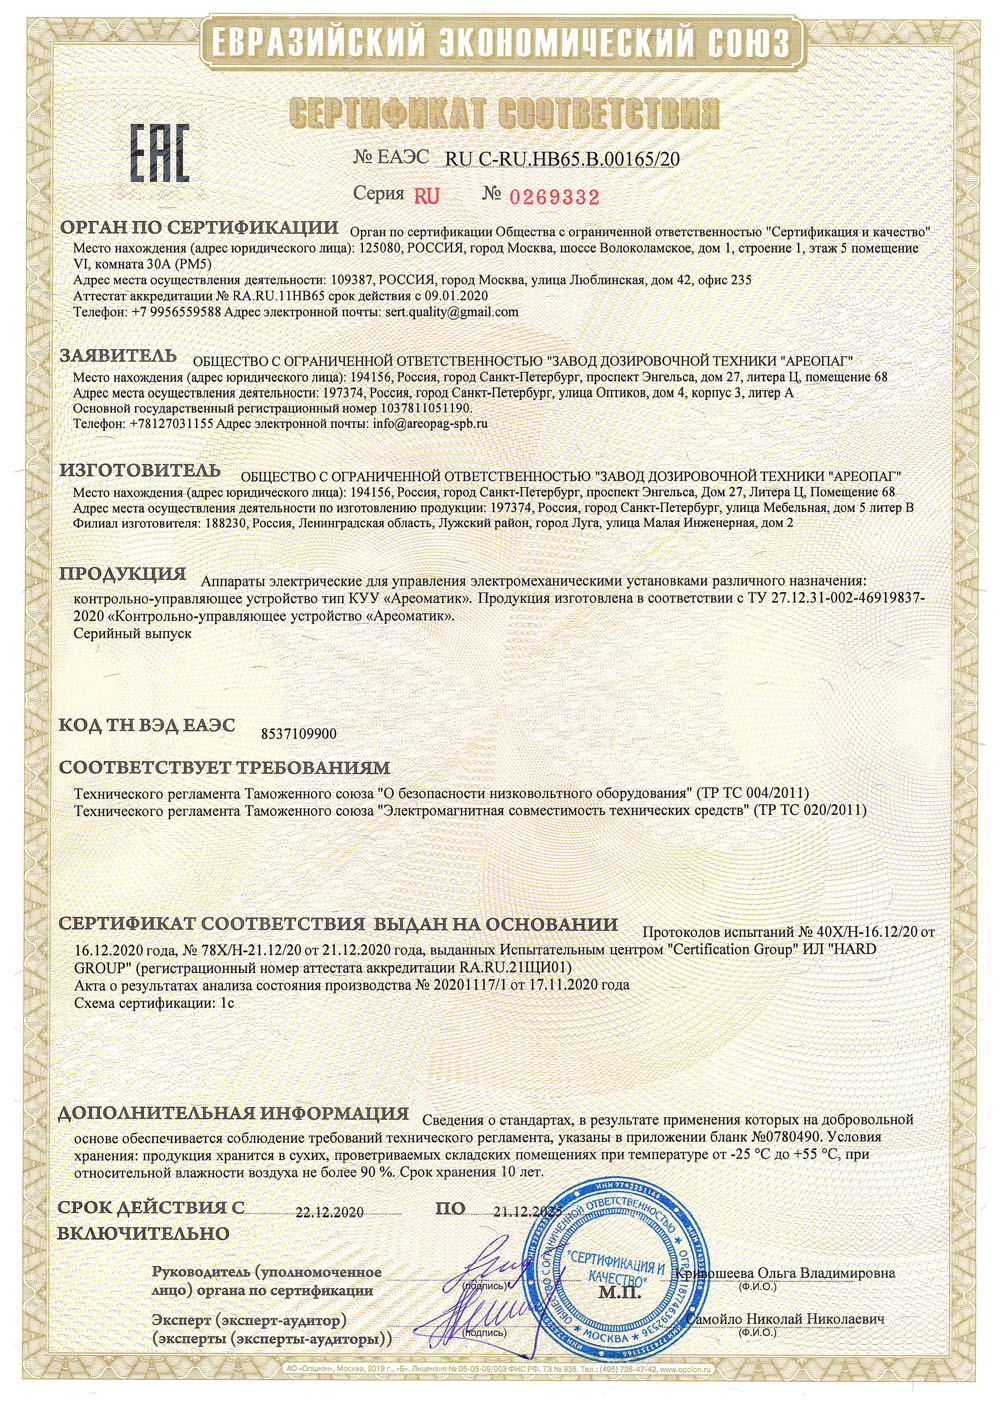 Сертификат соответствия ТС RU C-RU.НВ65.В.00165/20 на Контрольно-управляющее устройство "Ареоматик"